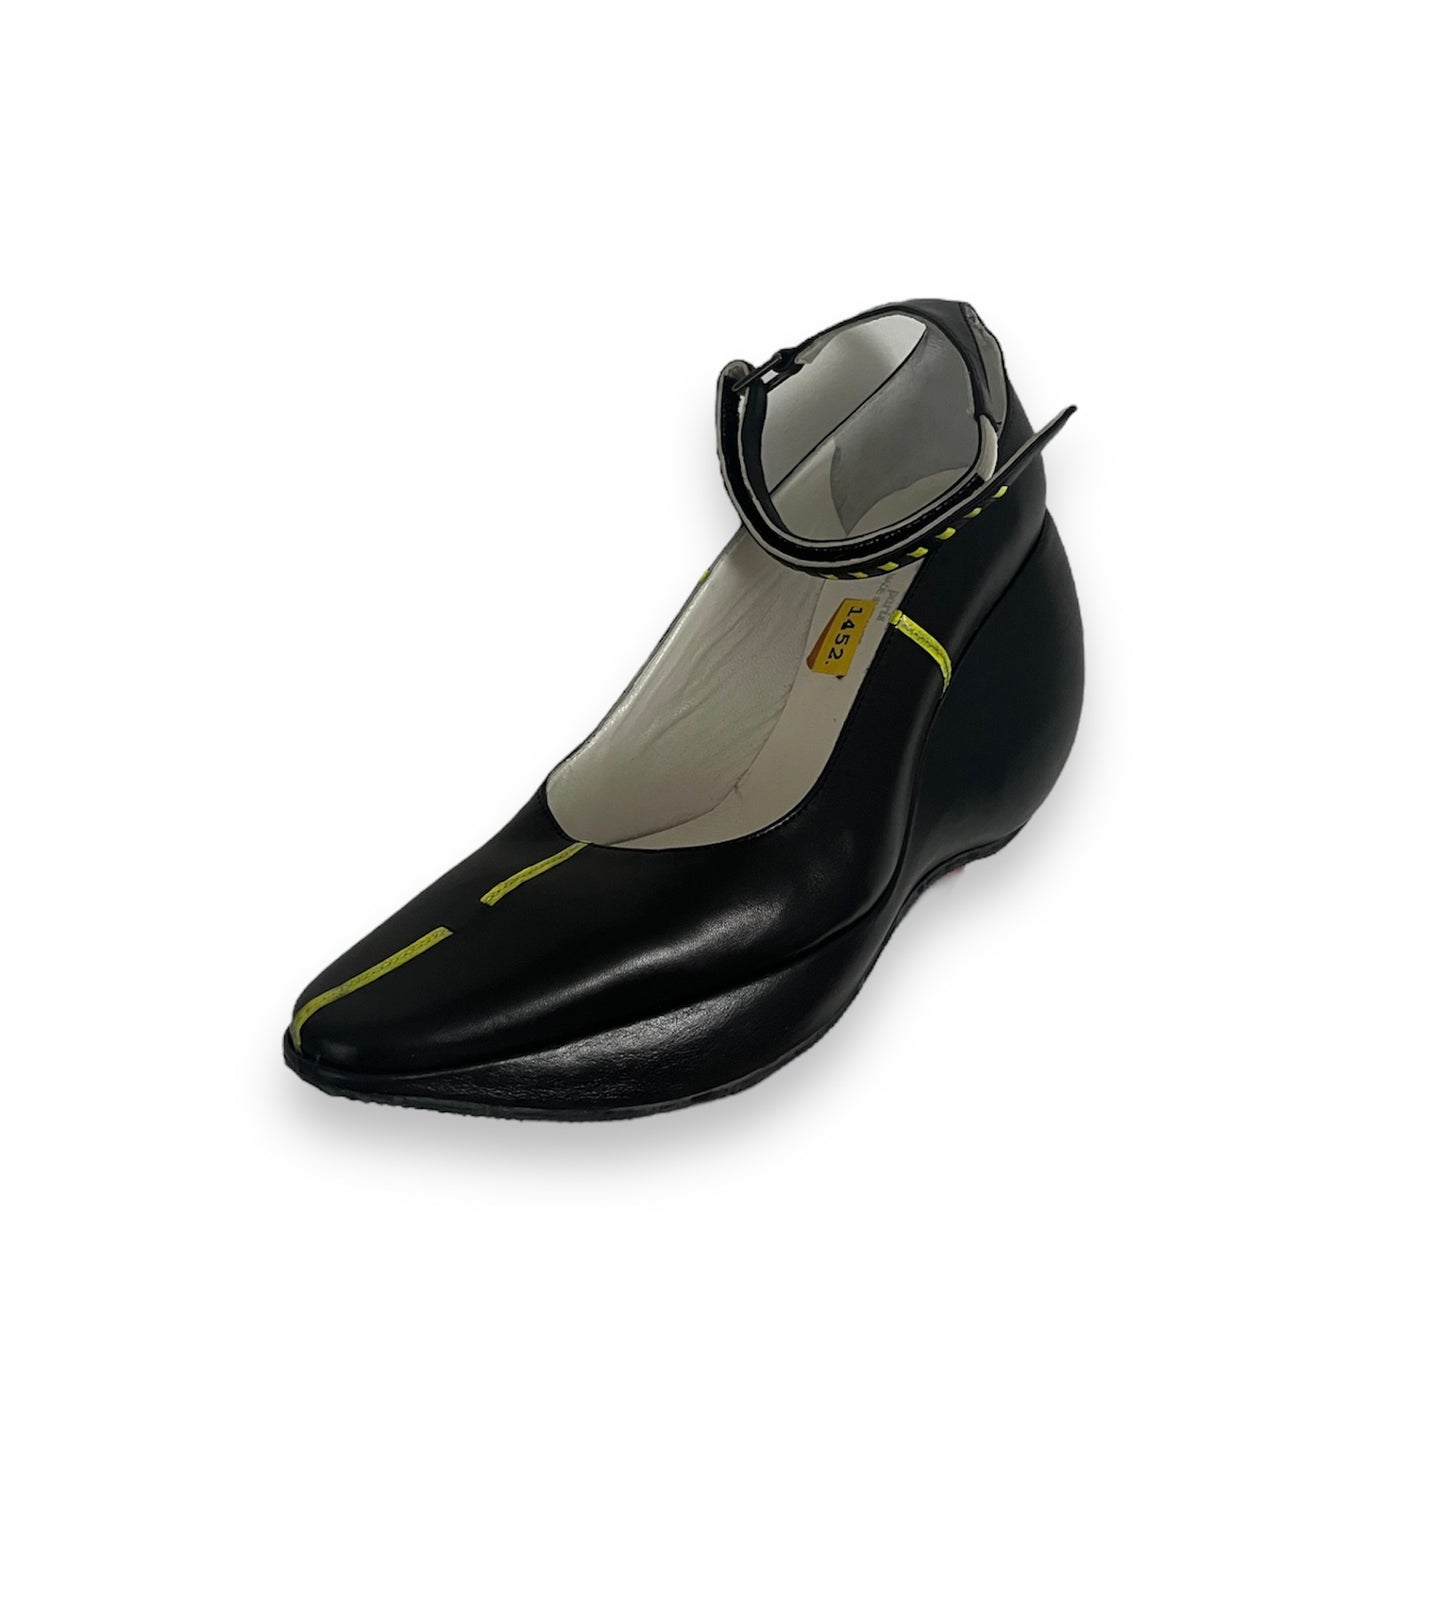 Futuristic vintage leather heels